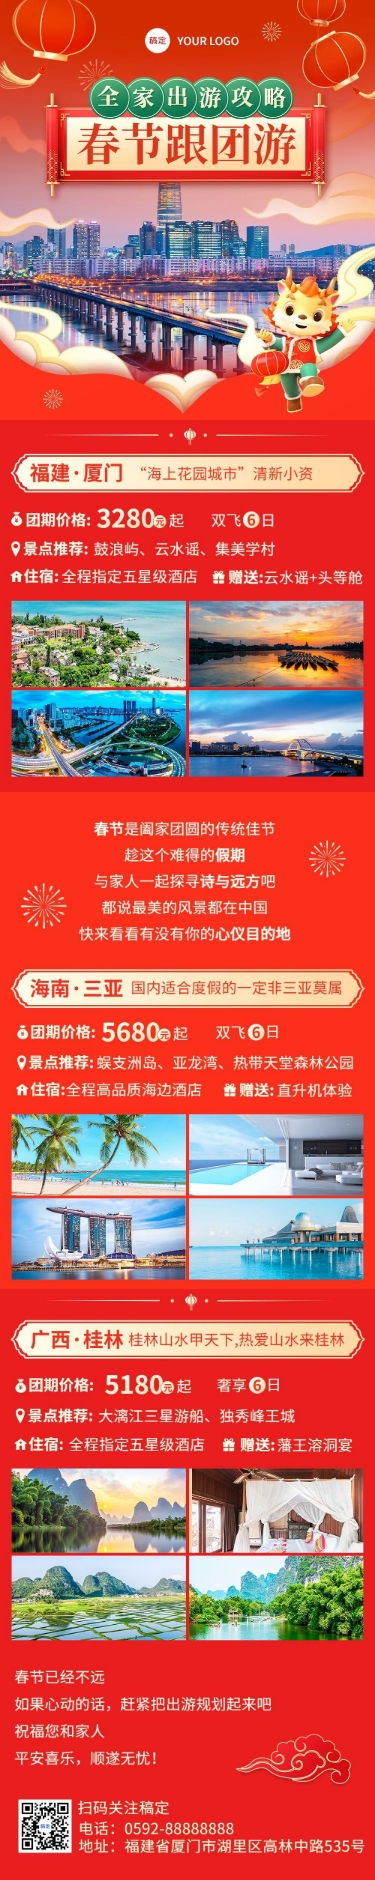 春节旅行社节日促销跟团游文章长图